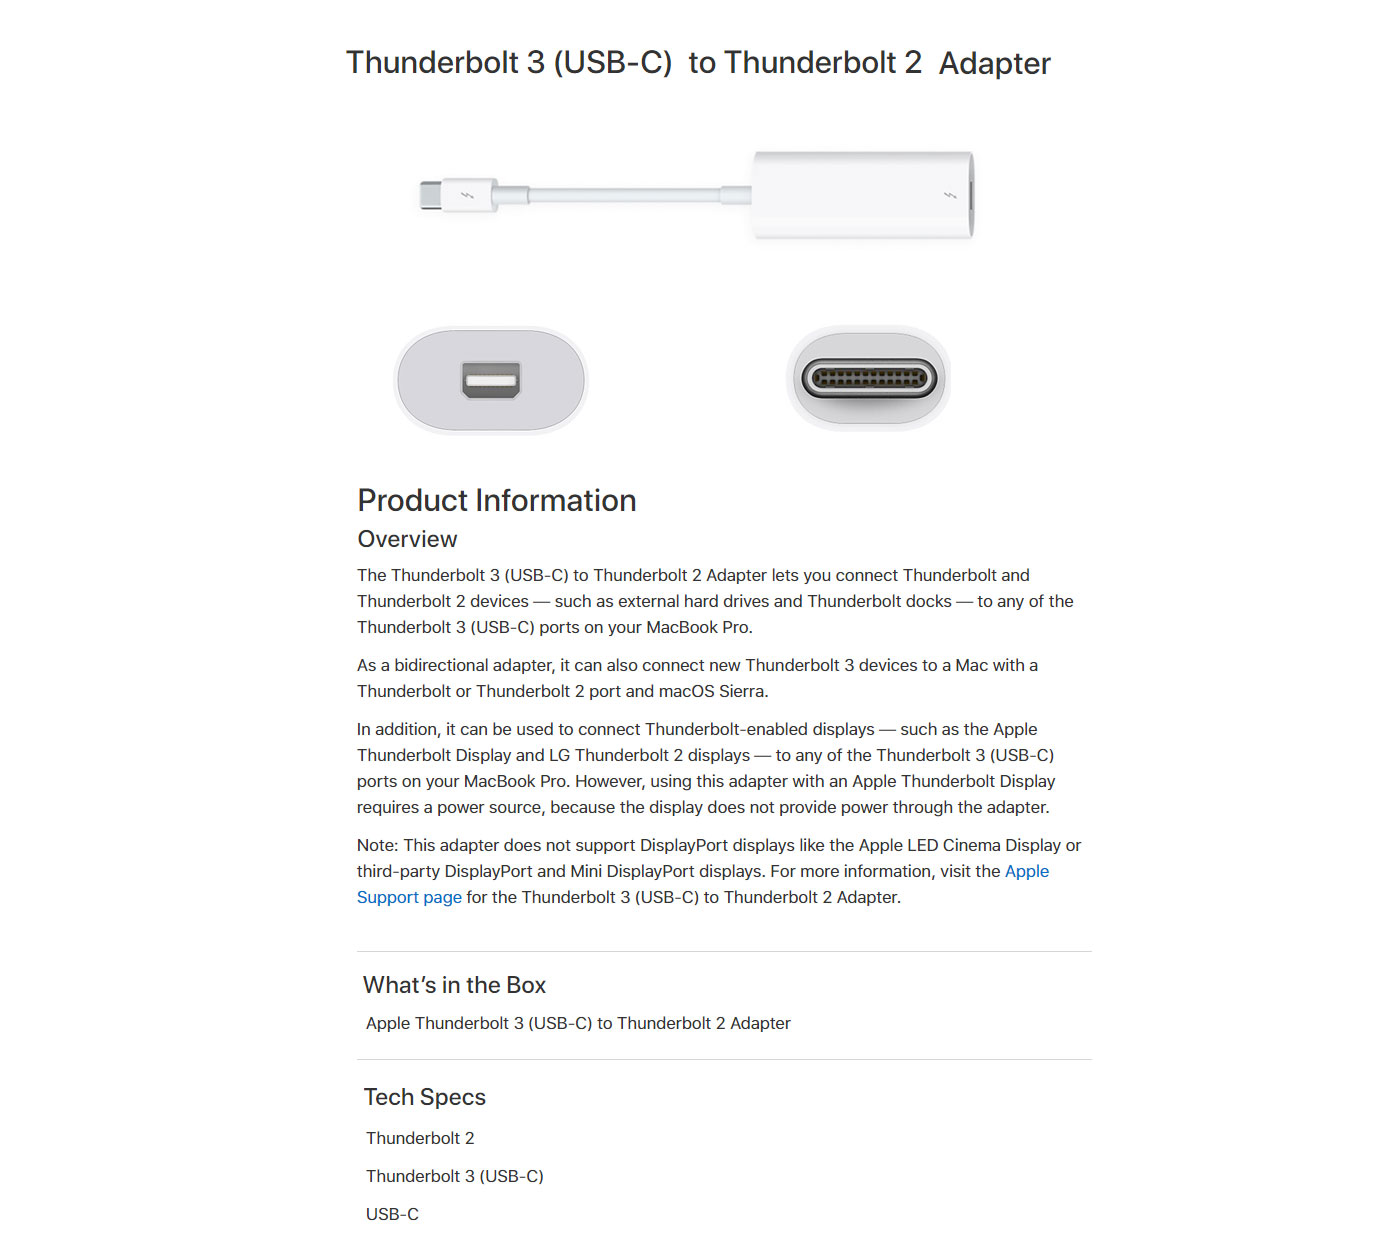 Apple Thunderbolt 3 to Thunderbolt 2 Adapter